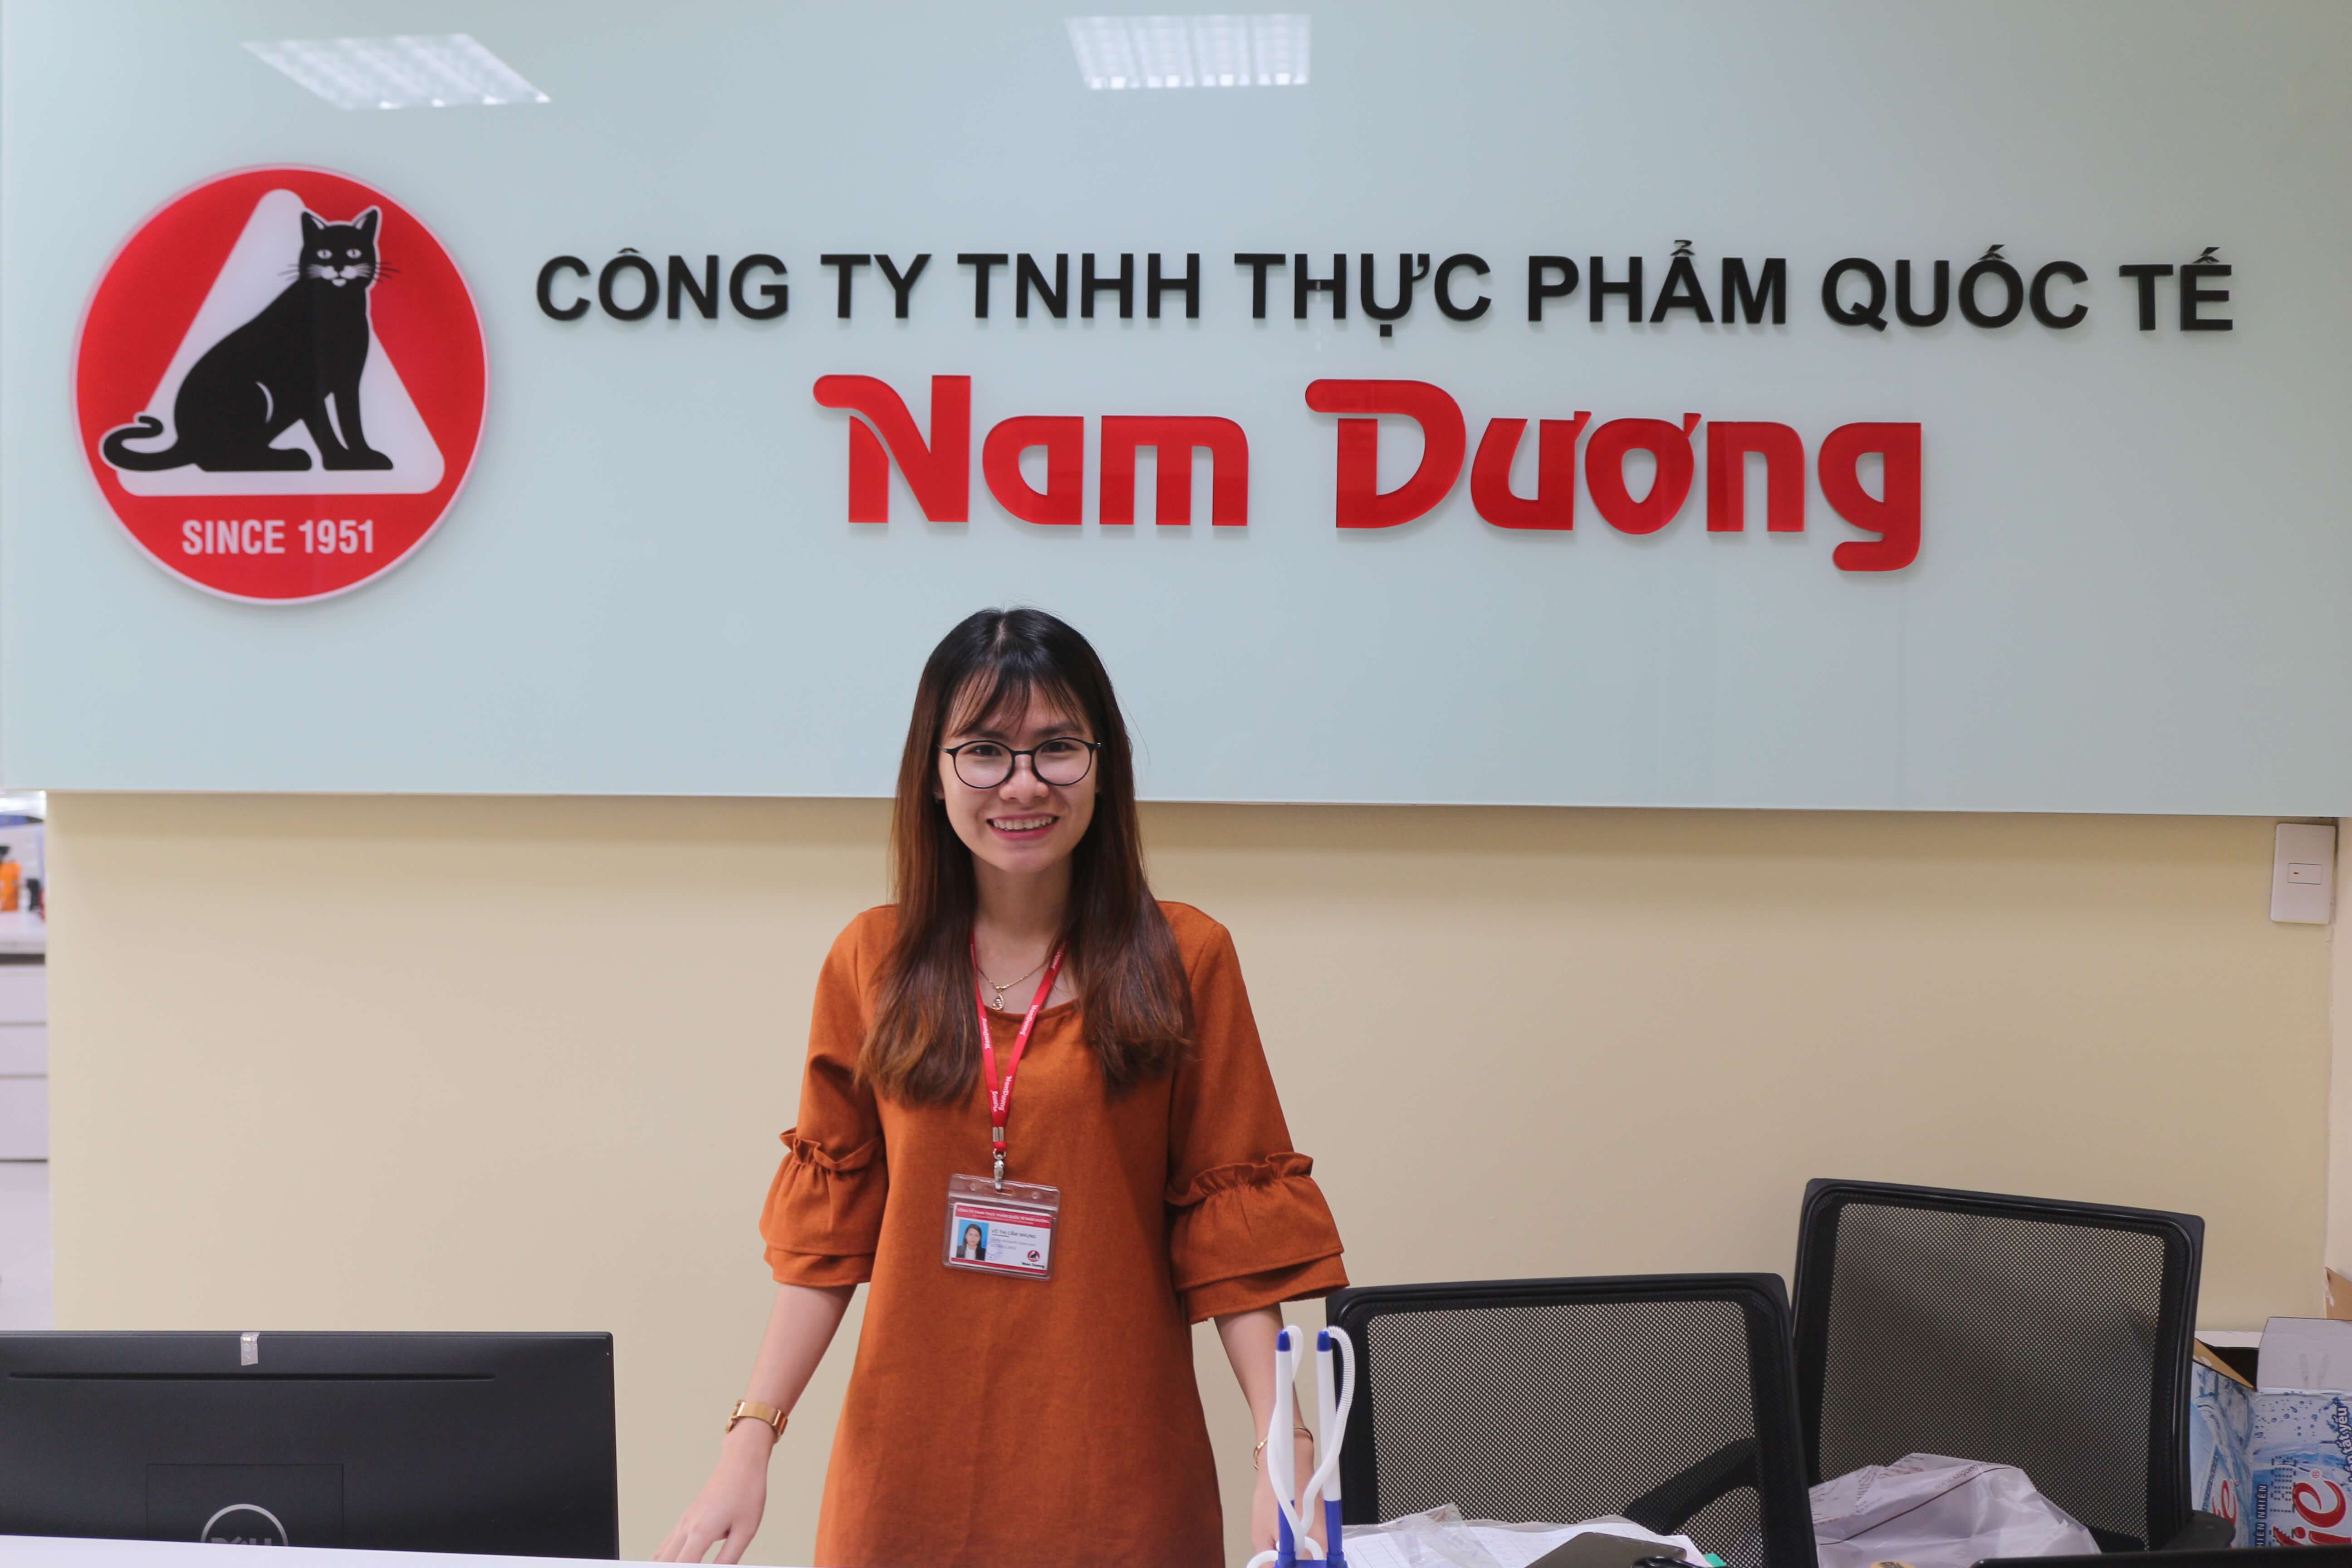 Ms. Vo Thi Cam Nhung